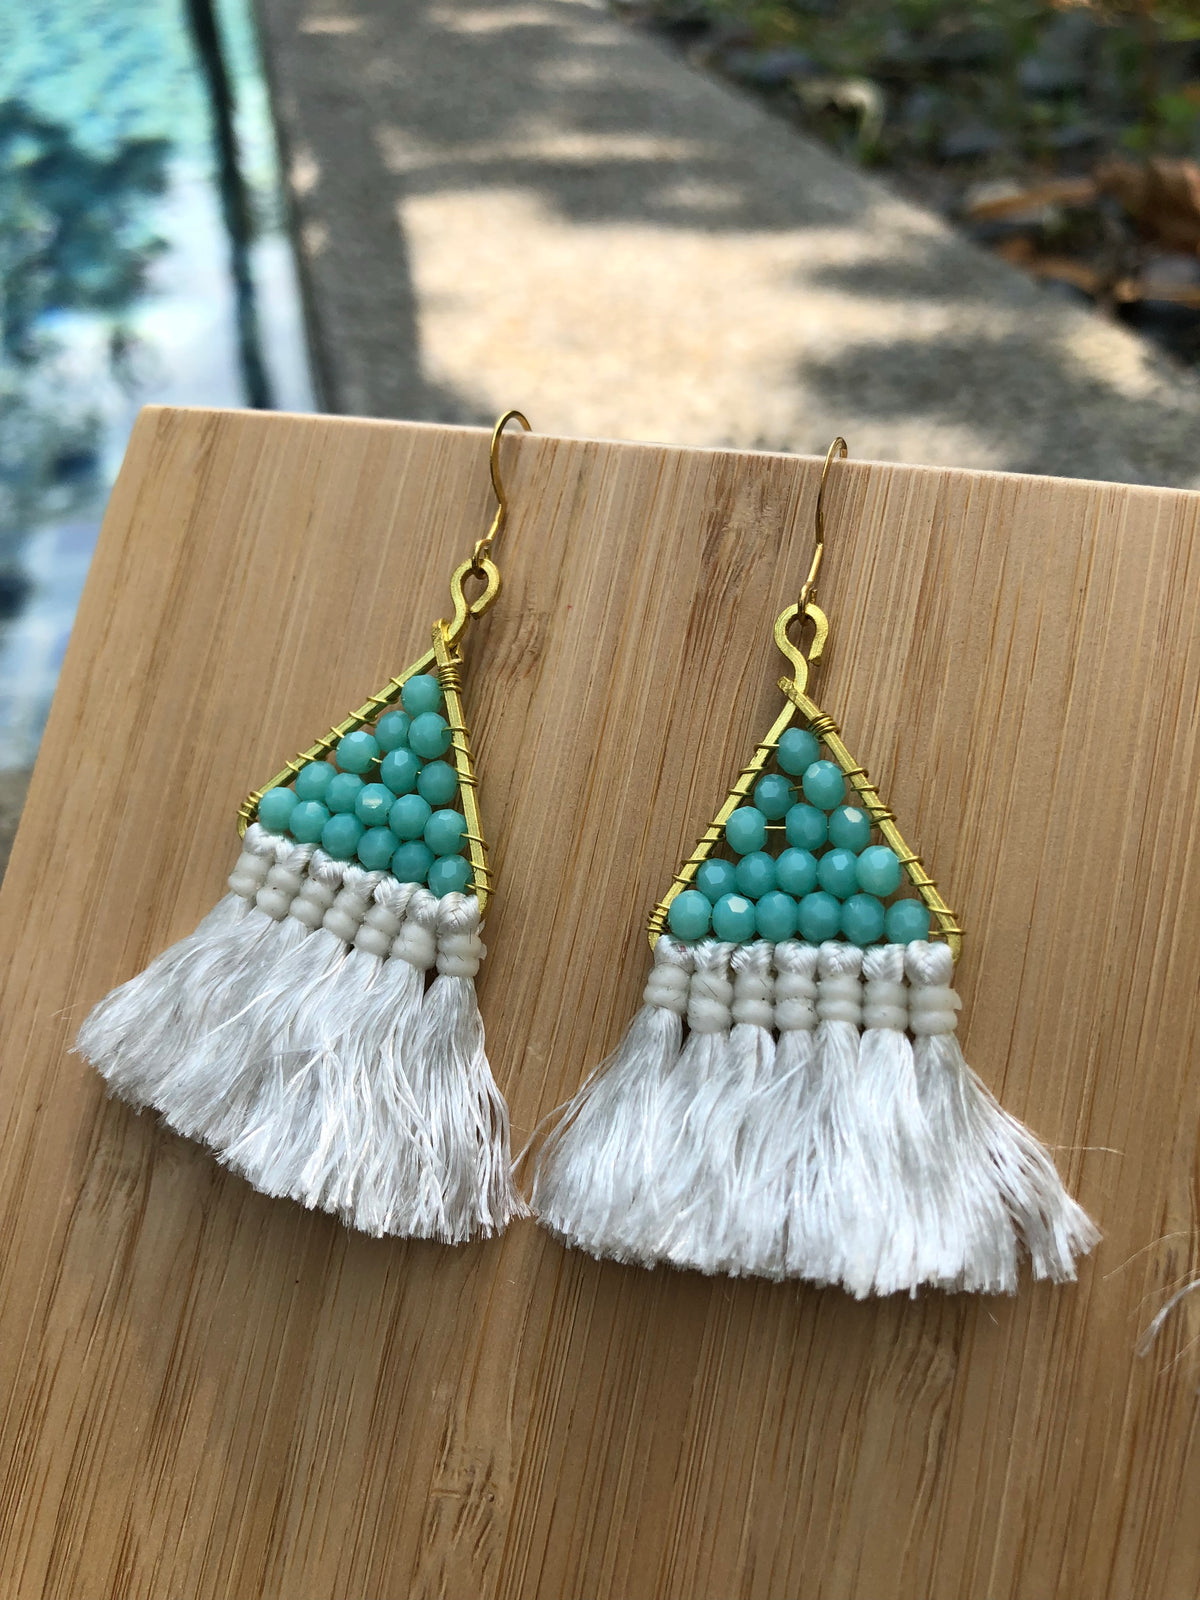 Kai earrings New Version